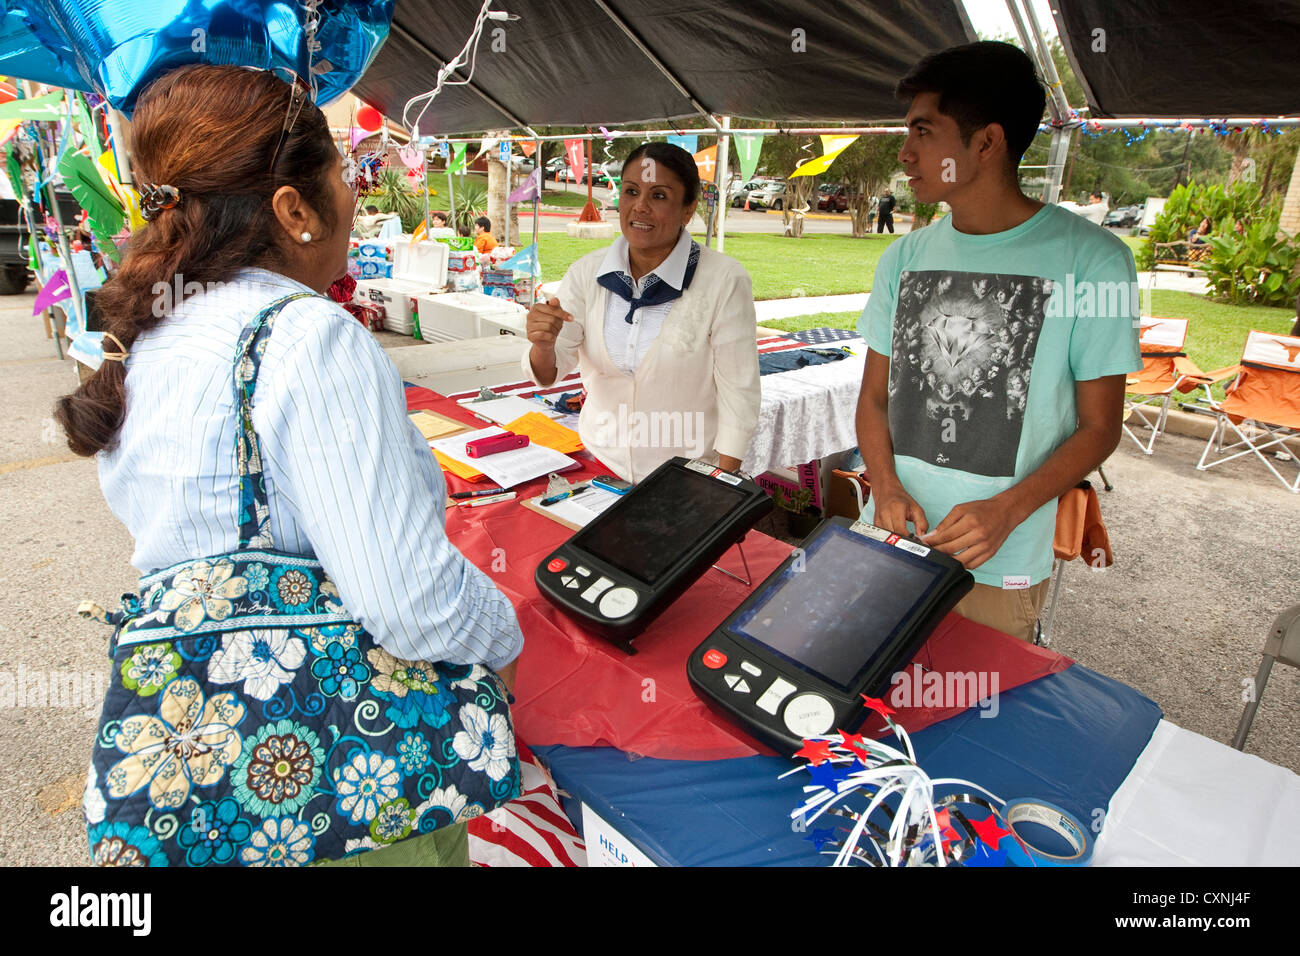 La registrazione degli elettori stand a una chiesa outdoor festival di Austin, Texas include il voto elettronico dimostrazione della macchina Foto Stock